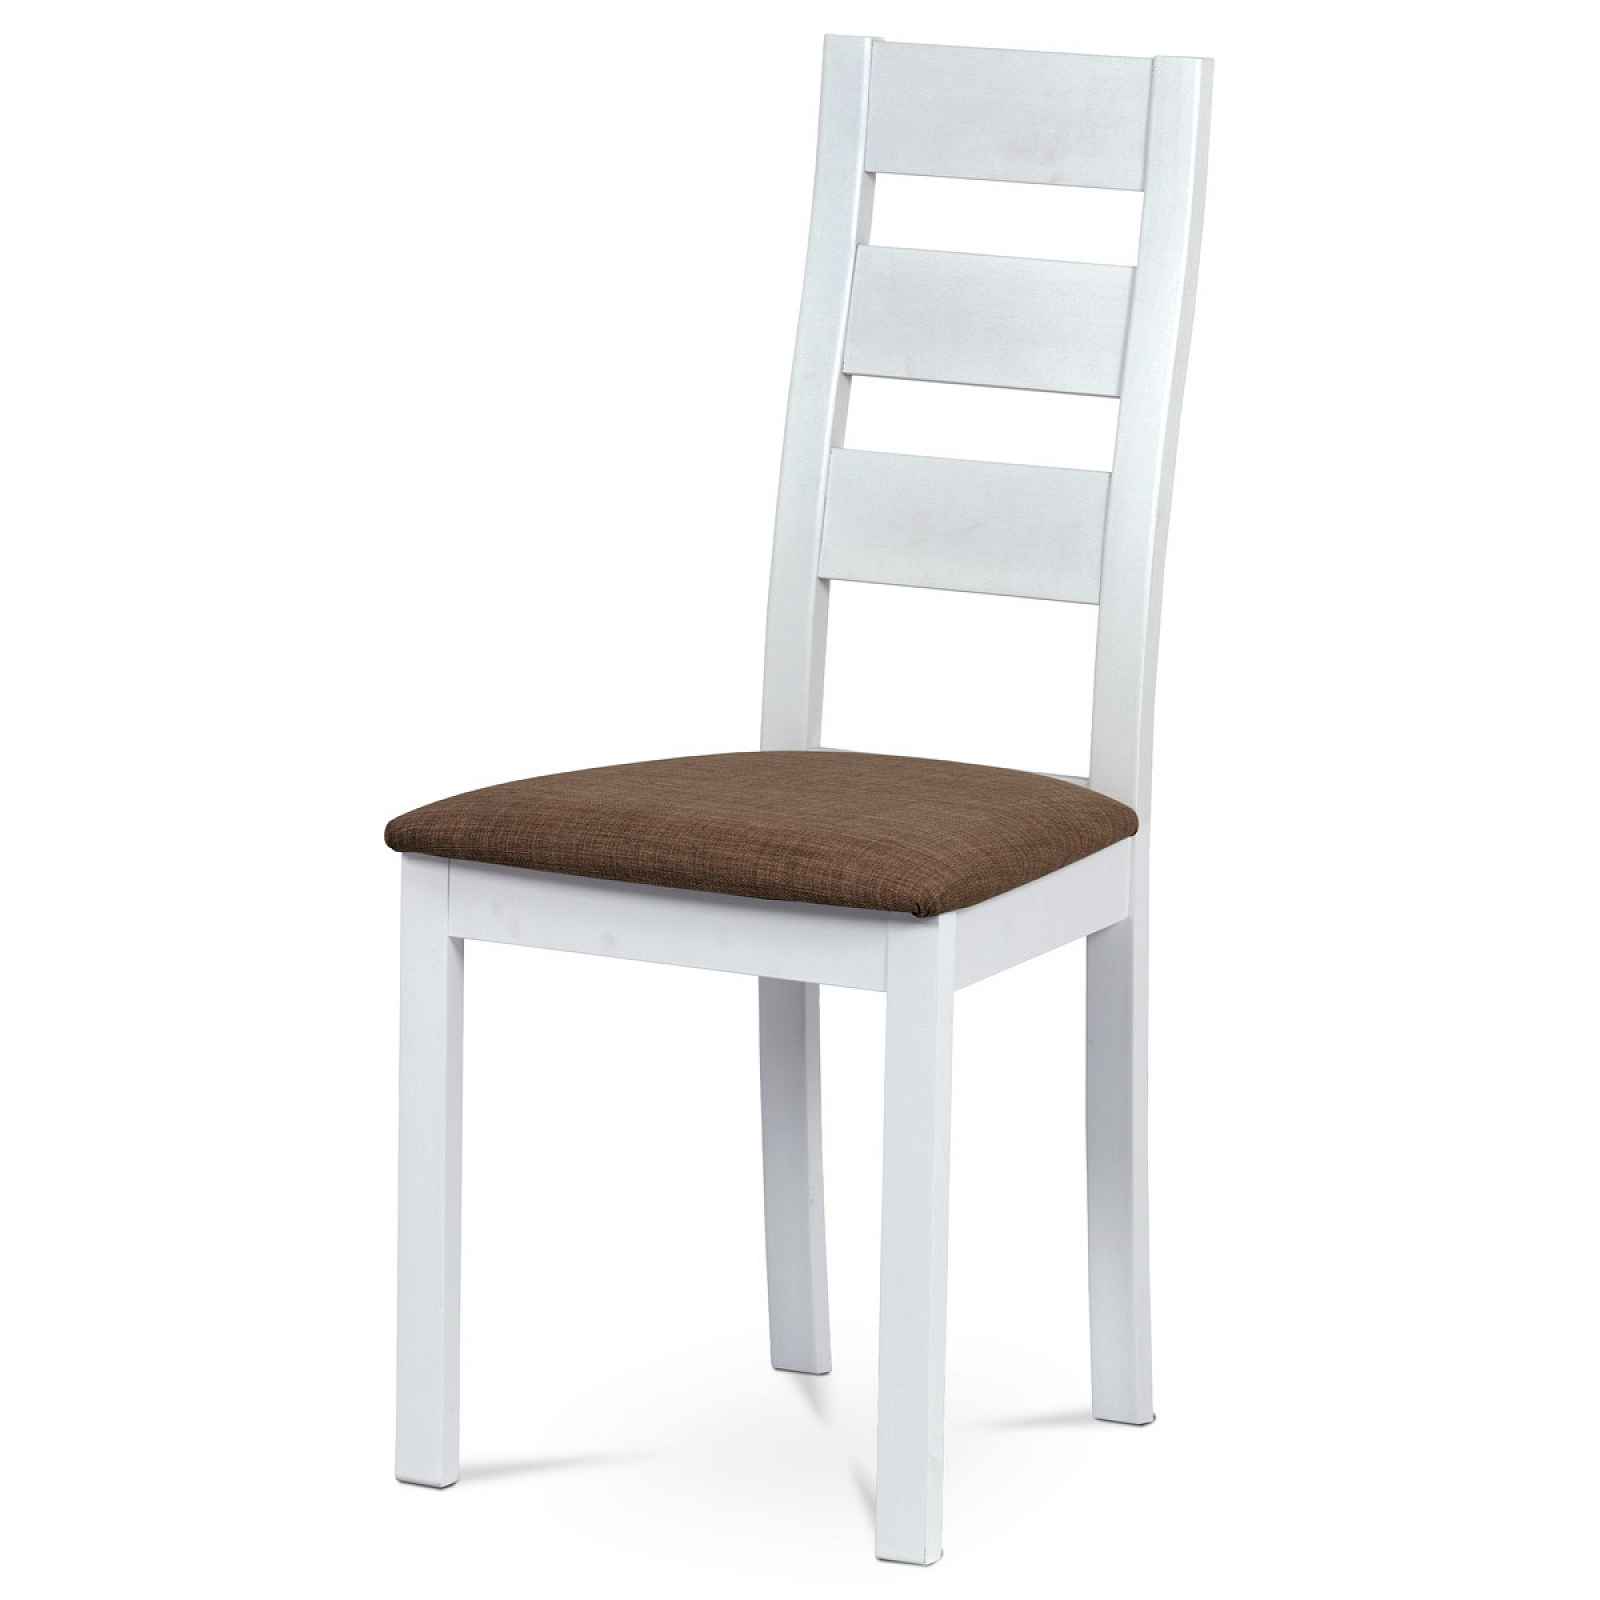 Jídelní židle, masiv buk/bílá barva